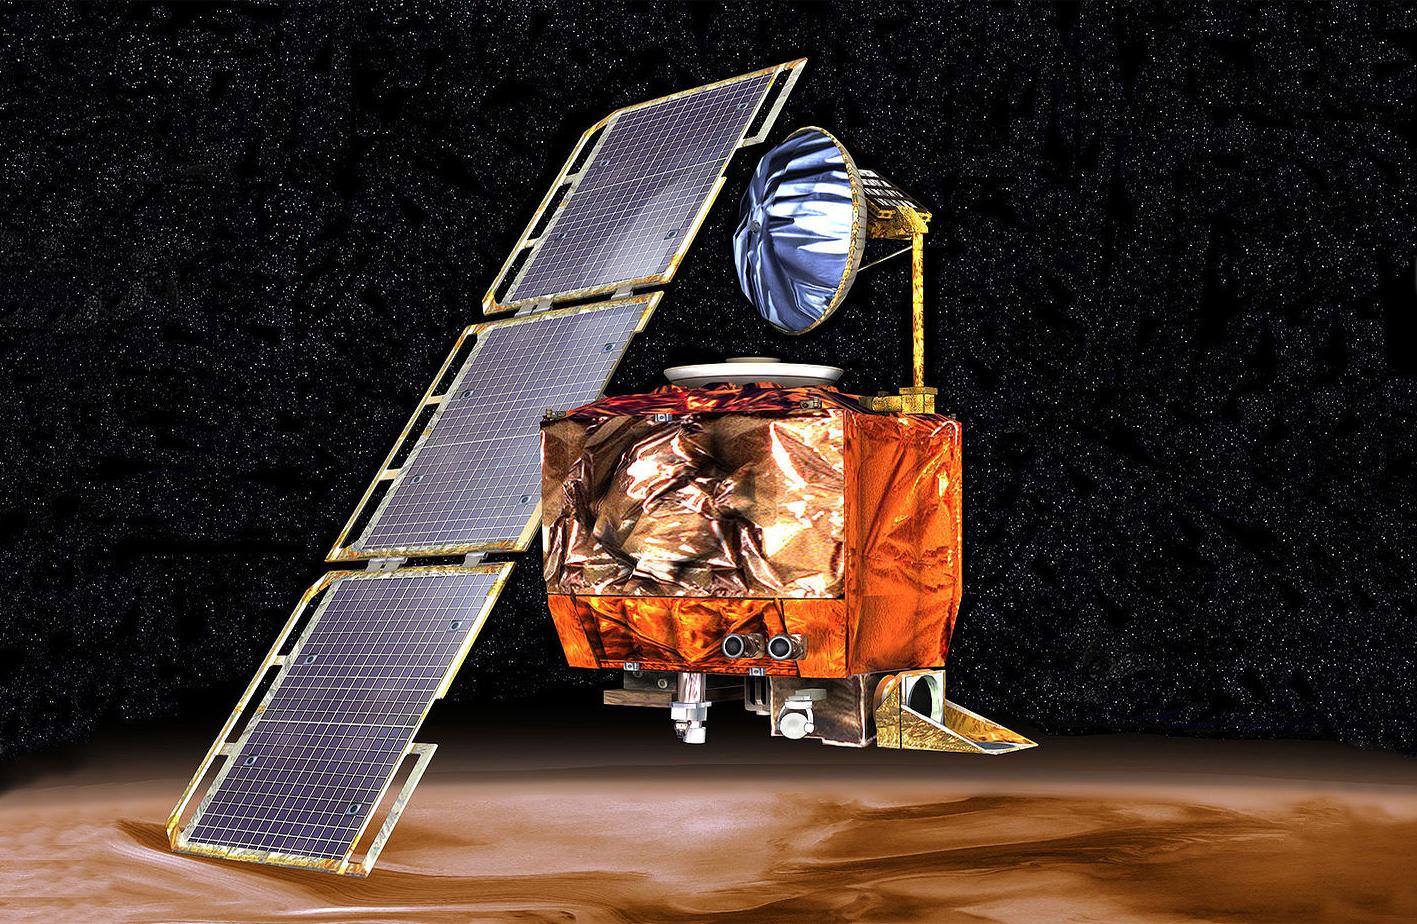 盘点历史上nasa发射过哪些火星探测器上